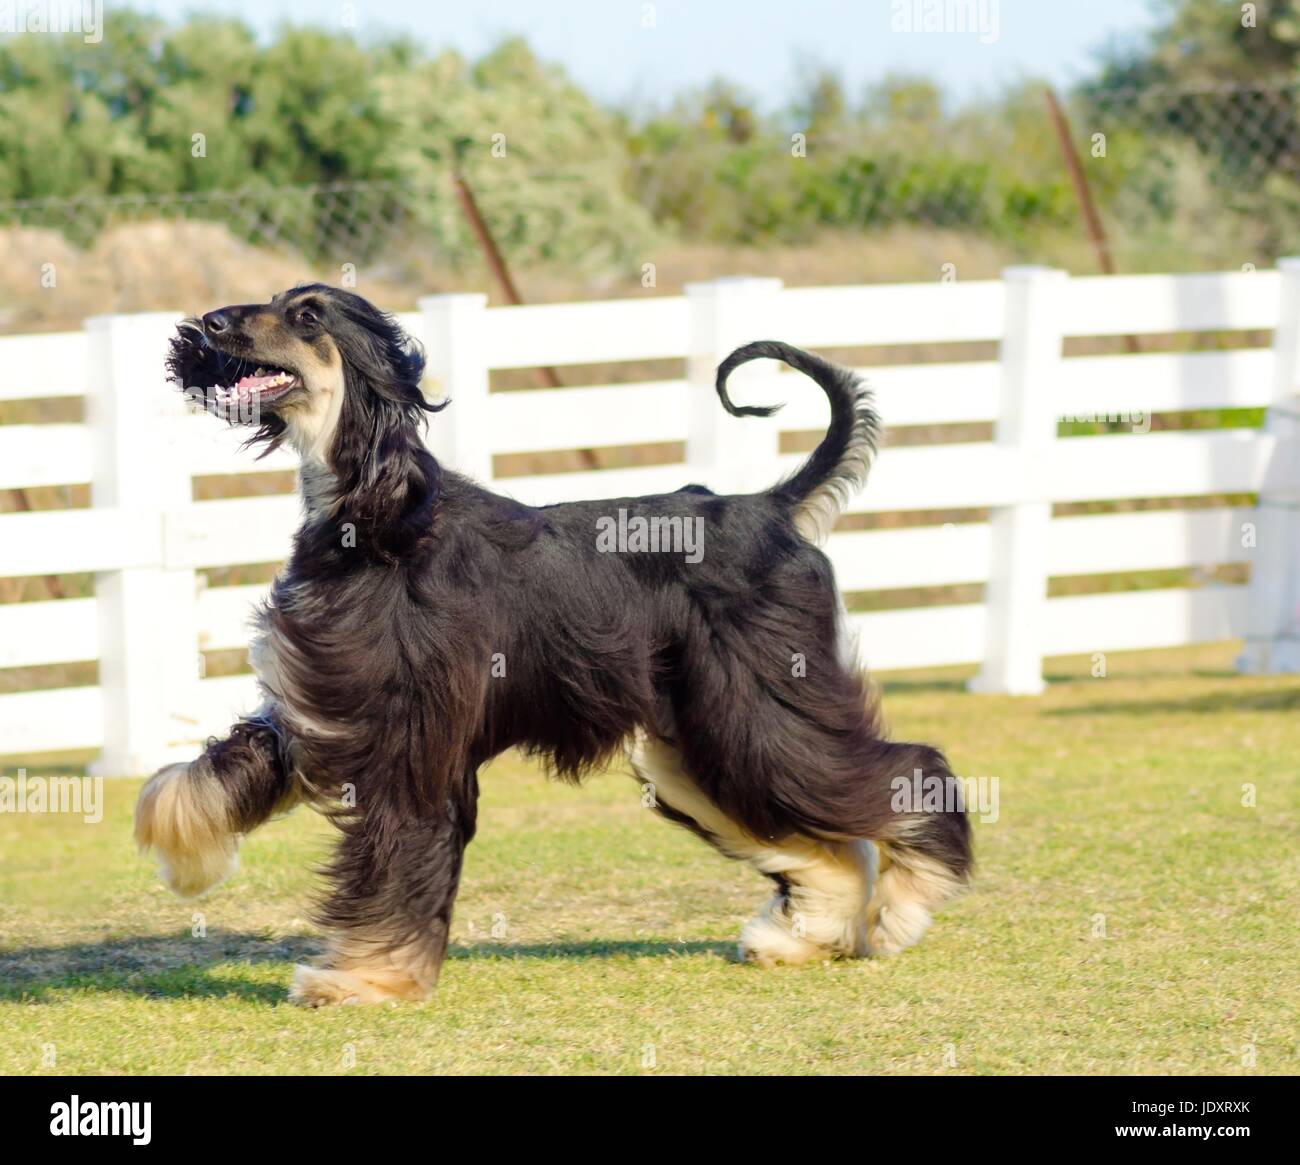 Ein Profil-Blick auf eine gesunde schöne Grizzle, Black And Tan, Afghanischer Windhund zu Fuß auf dem Rasen suchen glücklich und fröhlich. Persische Windhund Hunde sind Rank und schlank mit langen, schmalen Kopf, langen, seidigen Fell und Ringelschwanz. Stockfoto